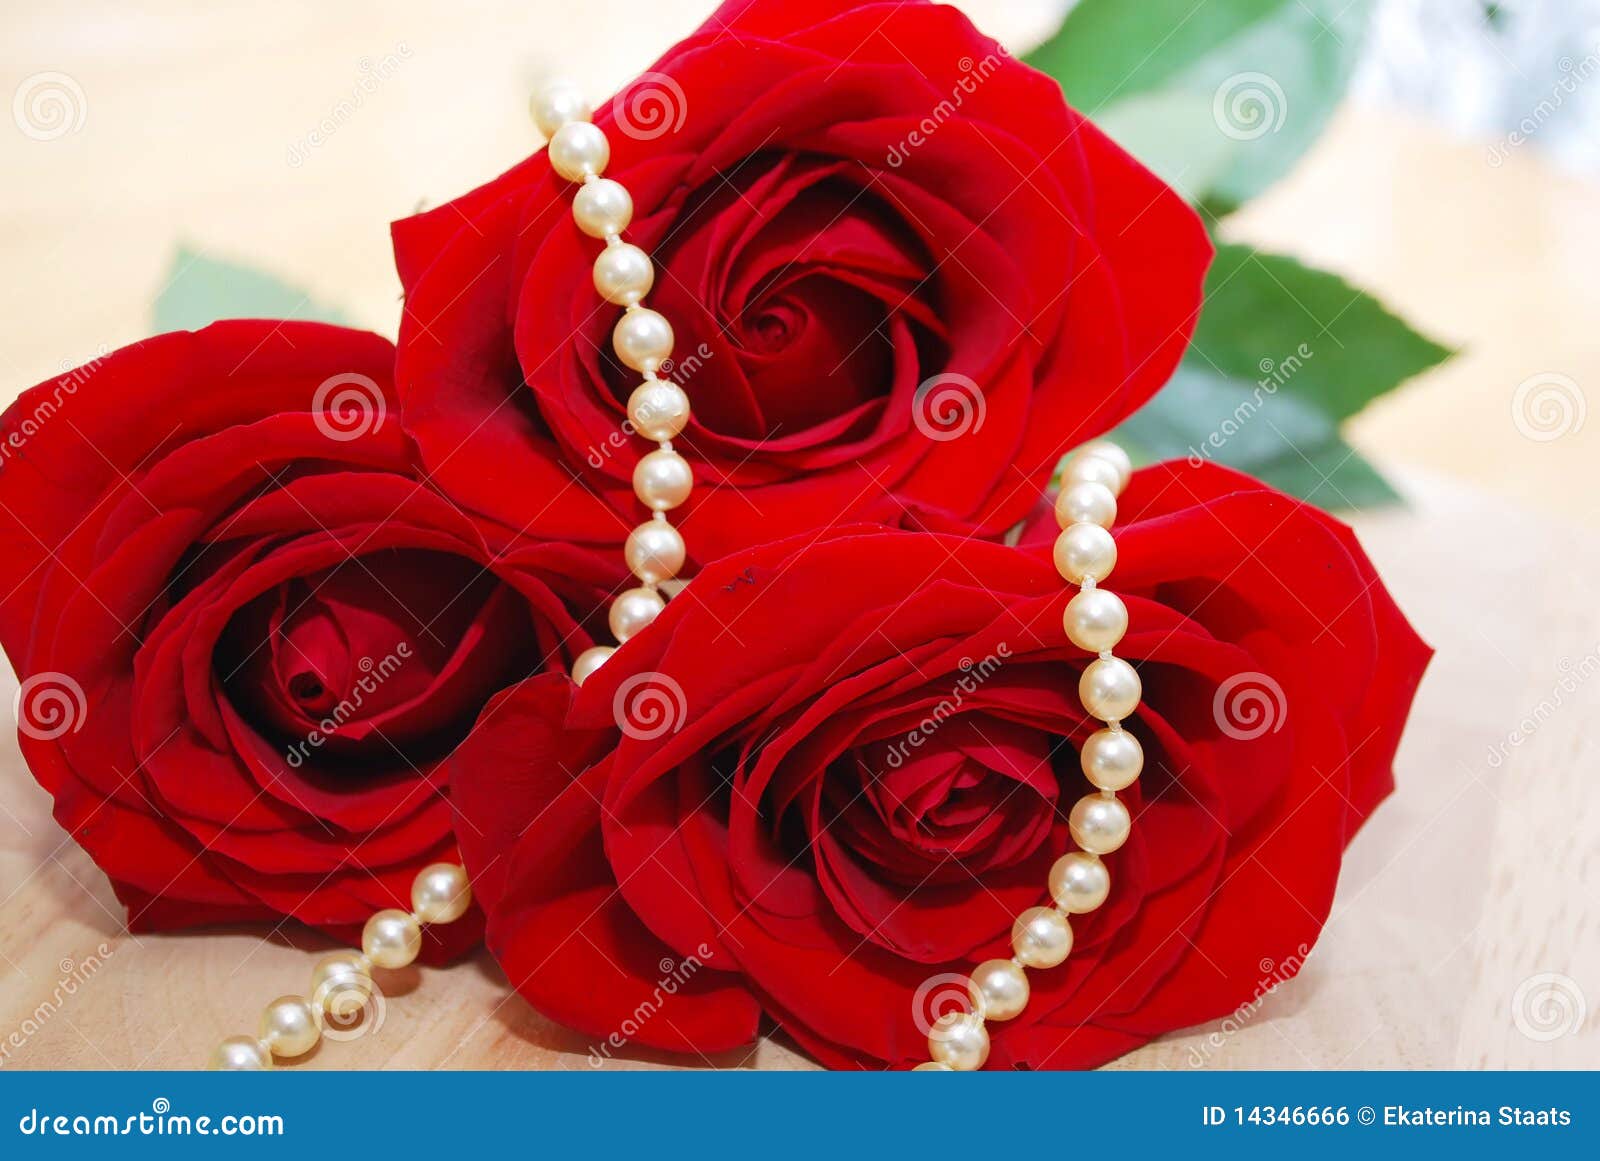 Biżuterii róże perełkowe czerwone ustawiają. Zakończenia kwiatów biżuterii kolii ładne perełkowe czerwone róże ustawiają krótkopędu w górę ślubu